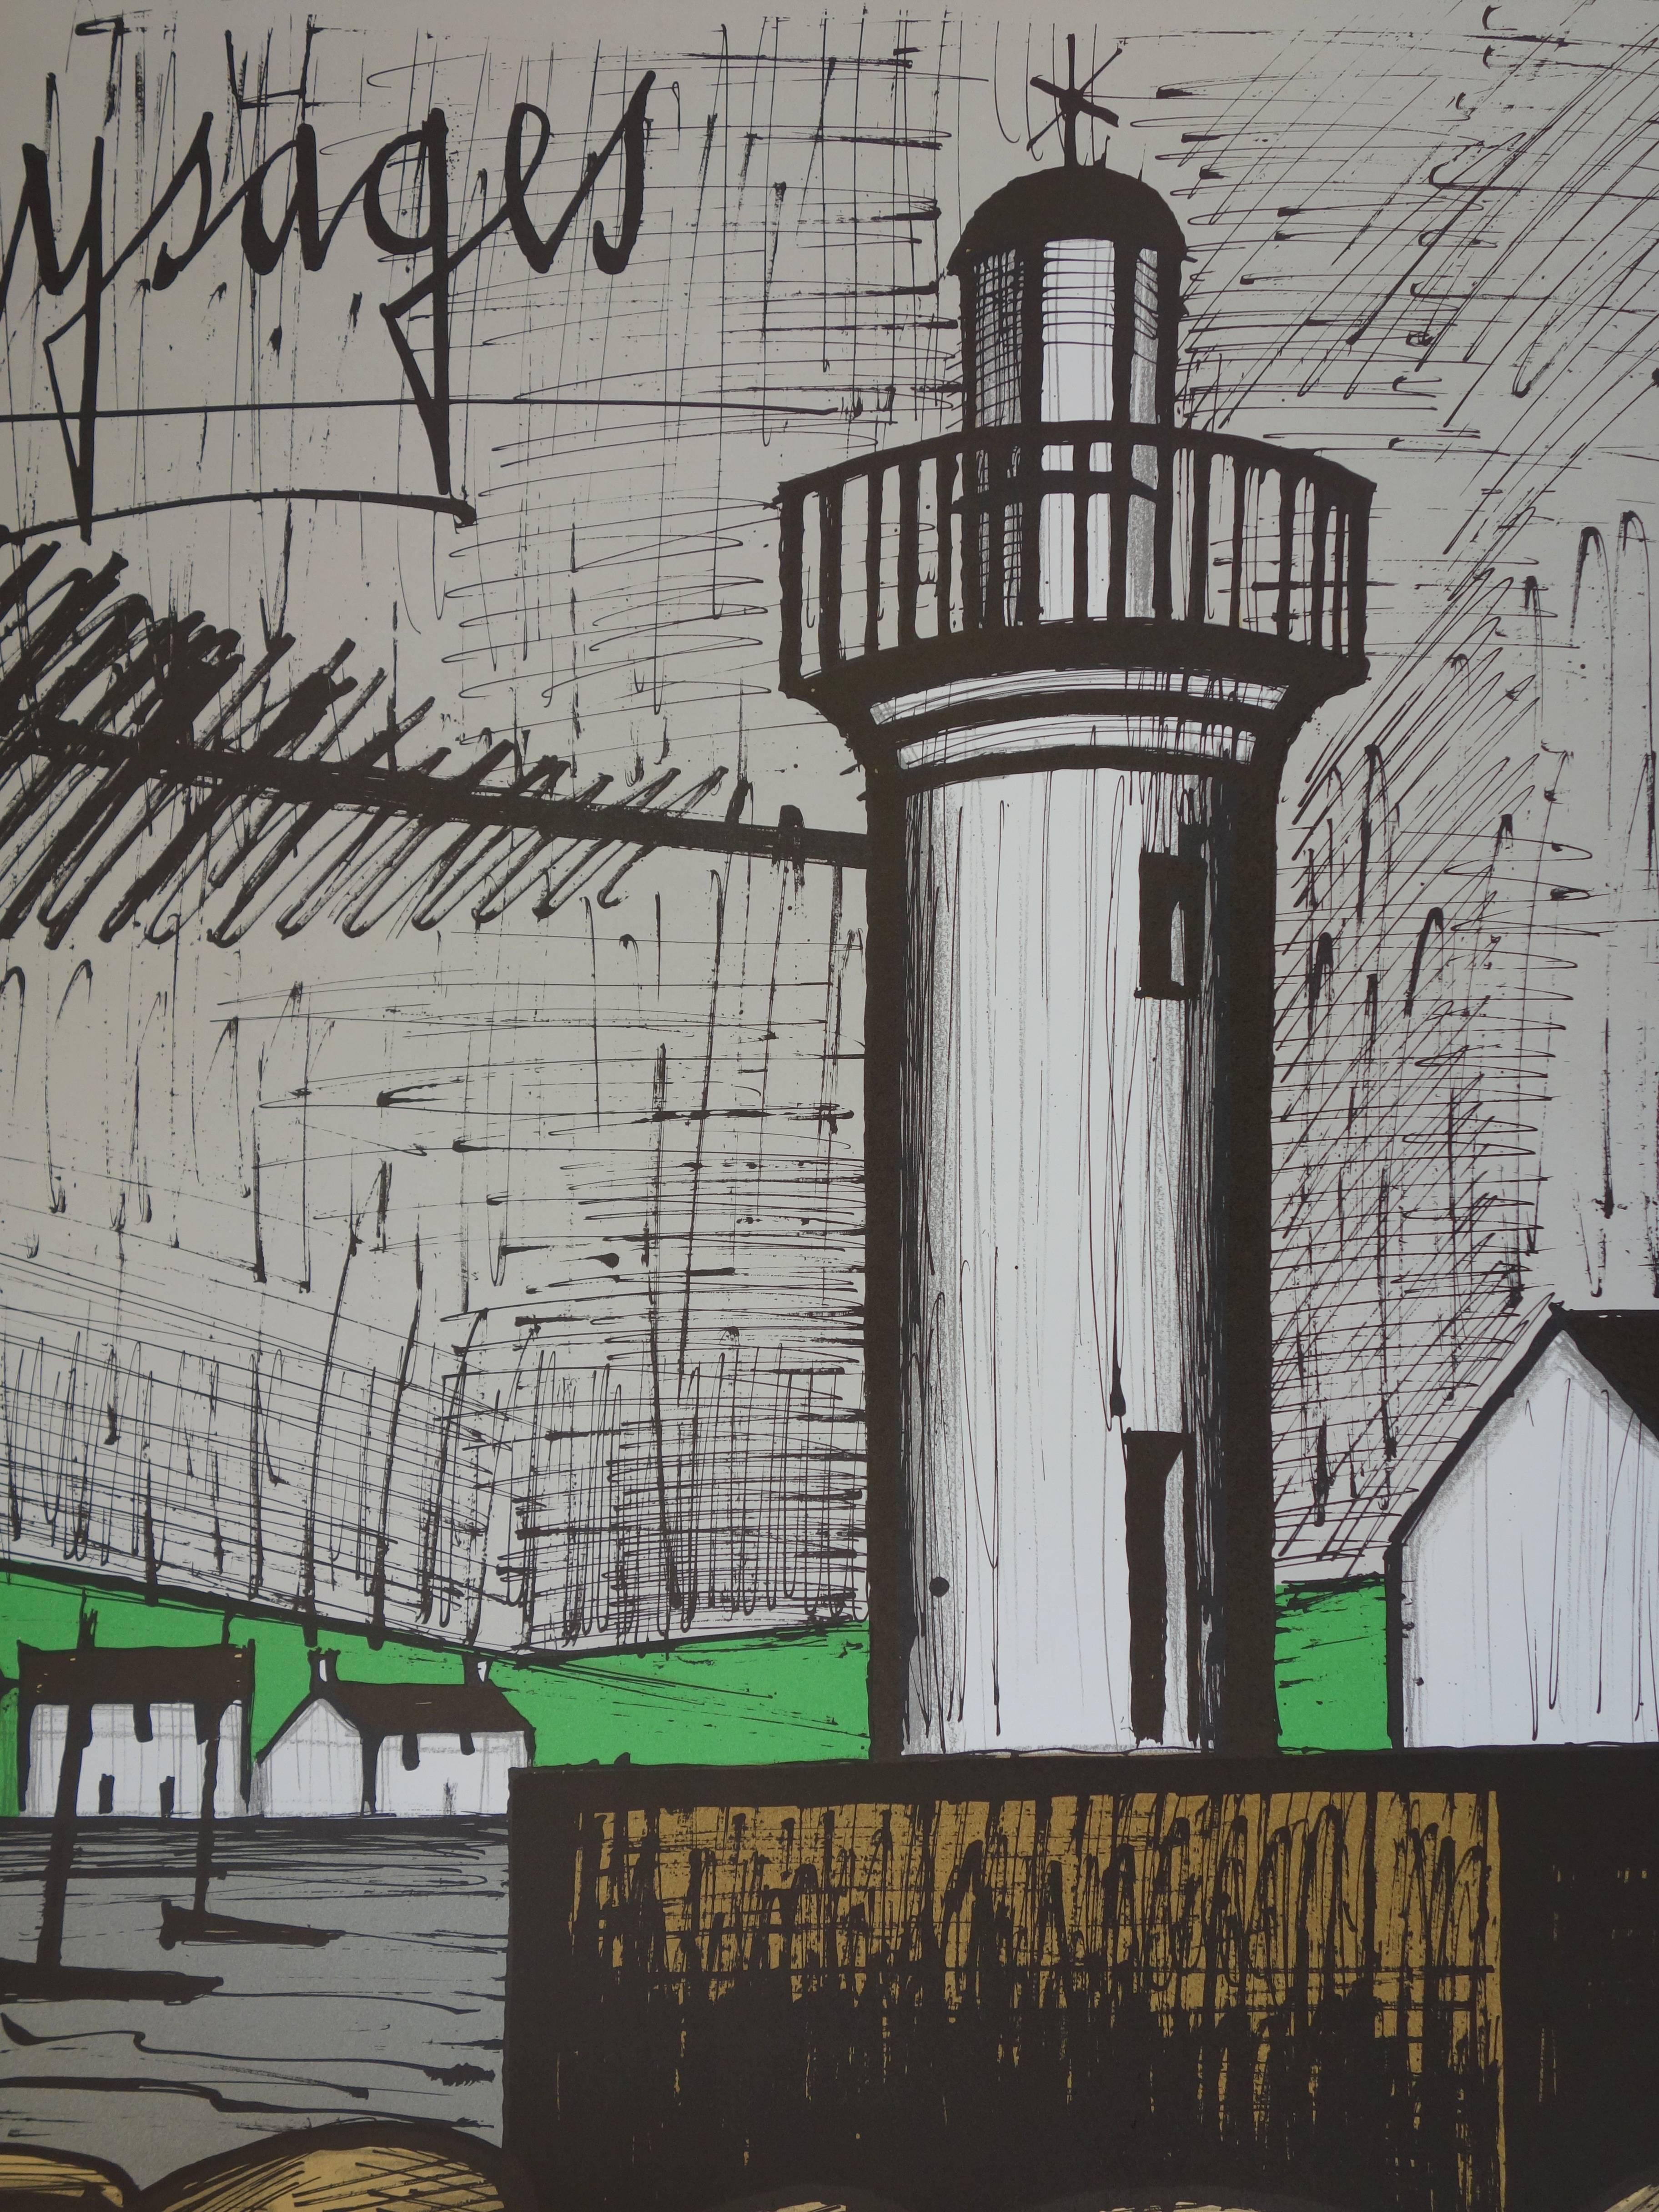 Britain : The Lighthouse - Lithograph - Mourlot 1983 - Modern Print by Bernard Buffet